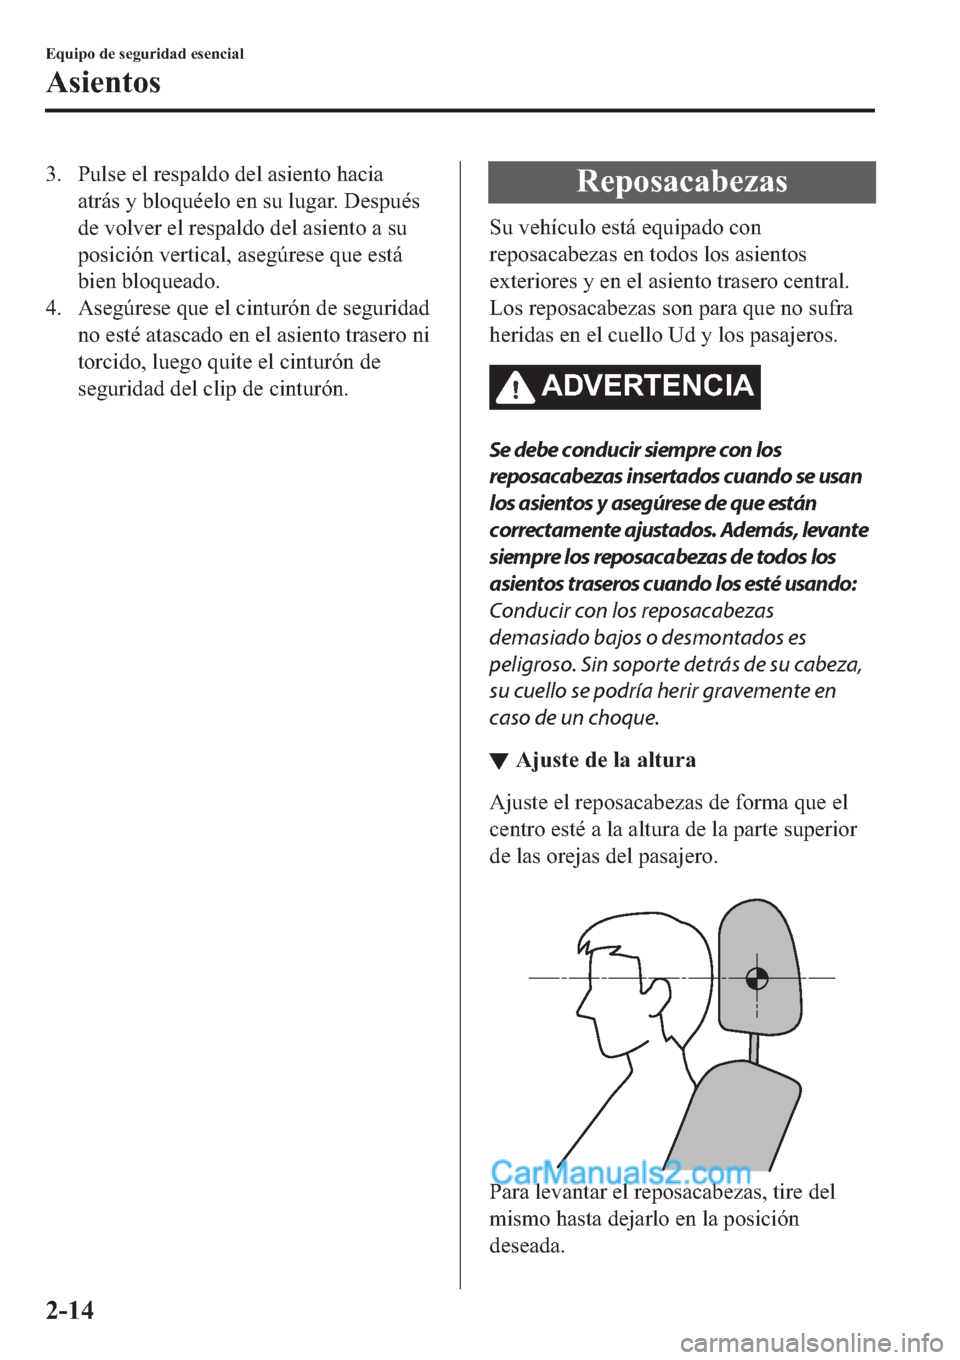 MAZDA MODEL 2 2019  Manual del propietario (in Spanish) �� �3�X�O�V�H��H�O��U�H�V�S�D�O�G�R��G�H�O��D�V�L�H�Q�W�R��K�D�F�L�D
�D�W�U�i�V��\��E�O�R�T�X�p�H�O�R��H�Q��V�X��O�X�J�D�U����H�V�S�X�p�V
�G�H��Y�R�O�Y�H�U��H�O��U�H�V�S�D�O�G�R��G�